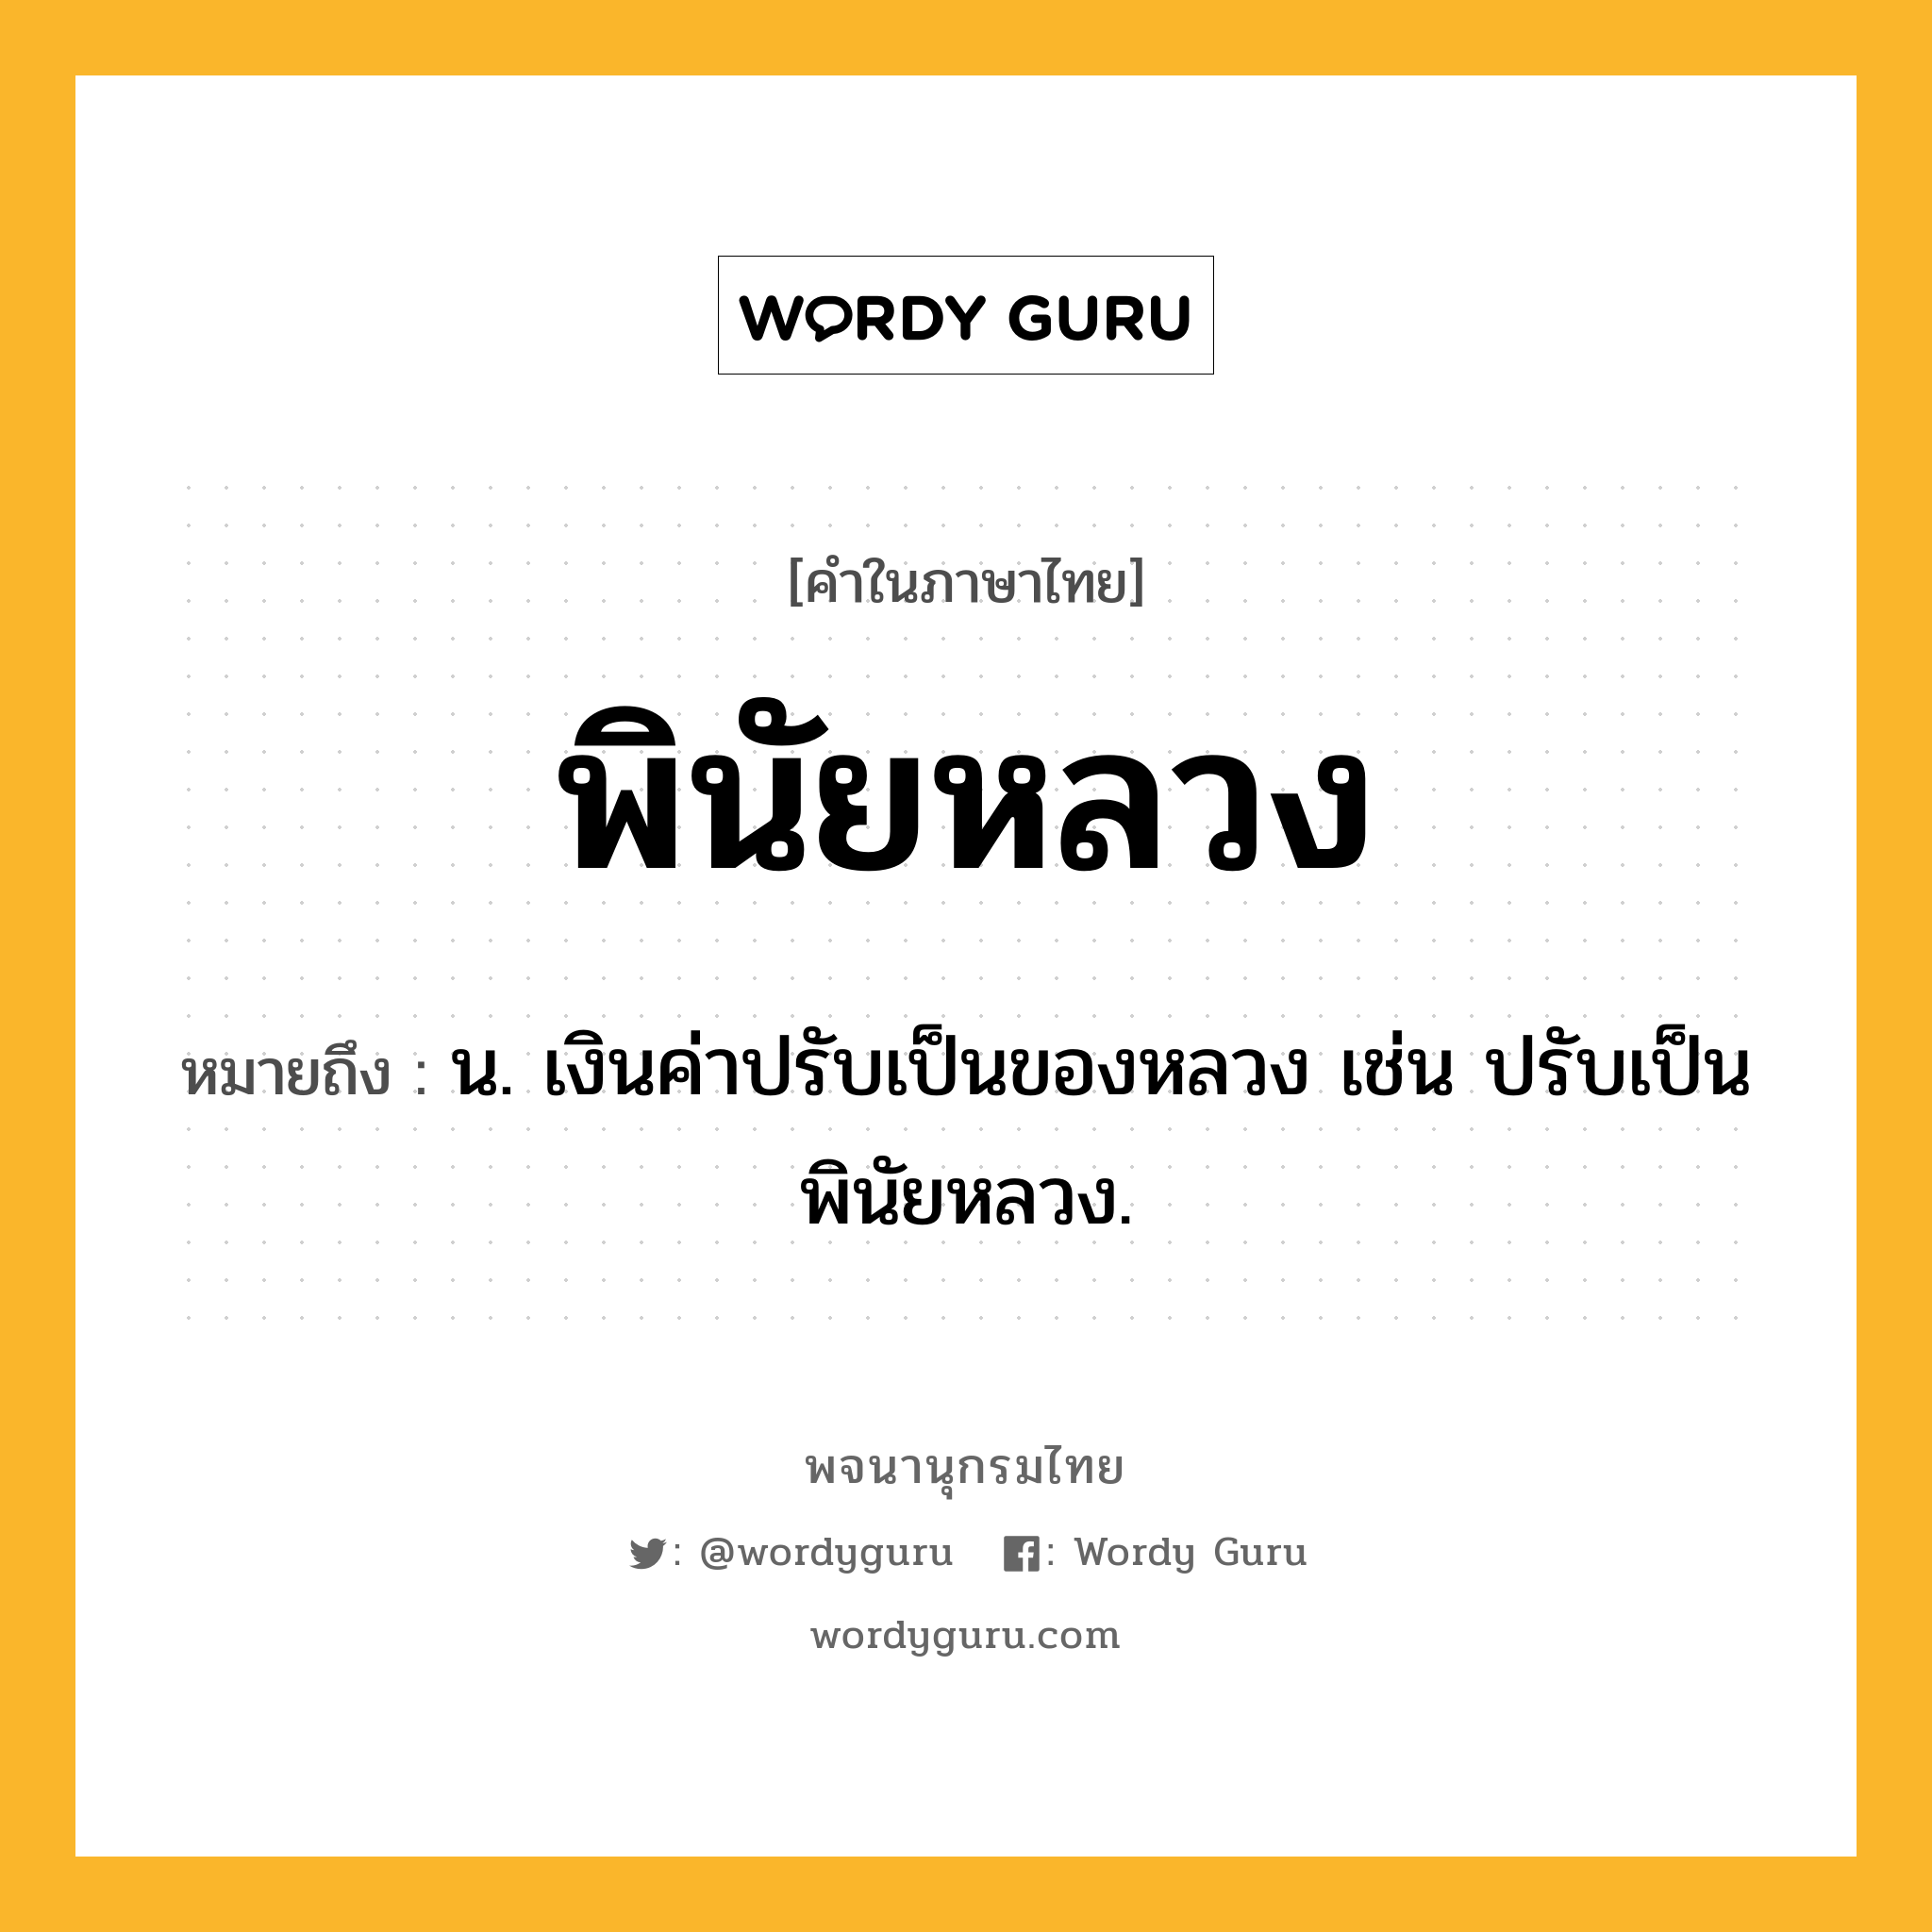 พินัยหลวง ความหมาย หมายถึงอะไร?, คำในภาษาไทย พินัยหลวง หมายถึง น. เงินค่าปรับเป็นของหลวง เช่น ปรับเป็นพินัยหลวง.